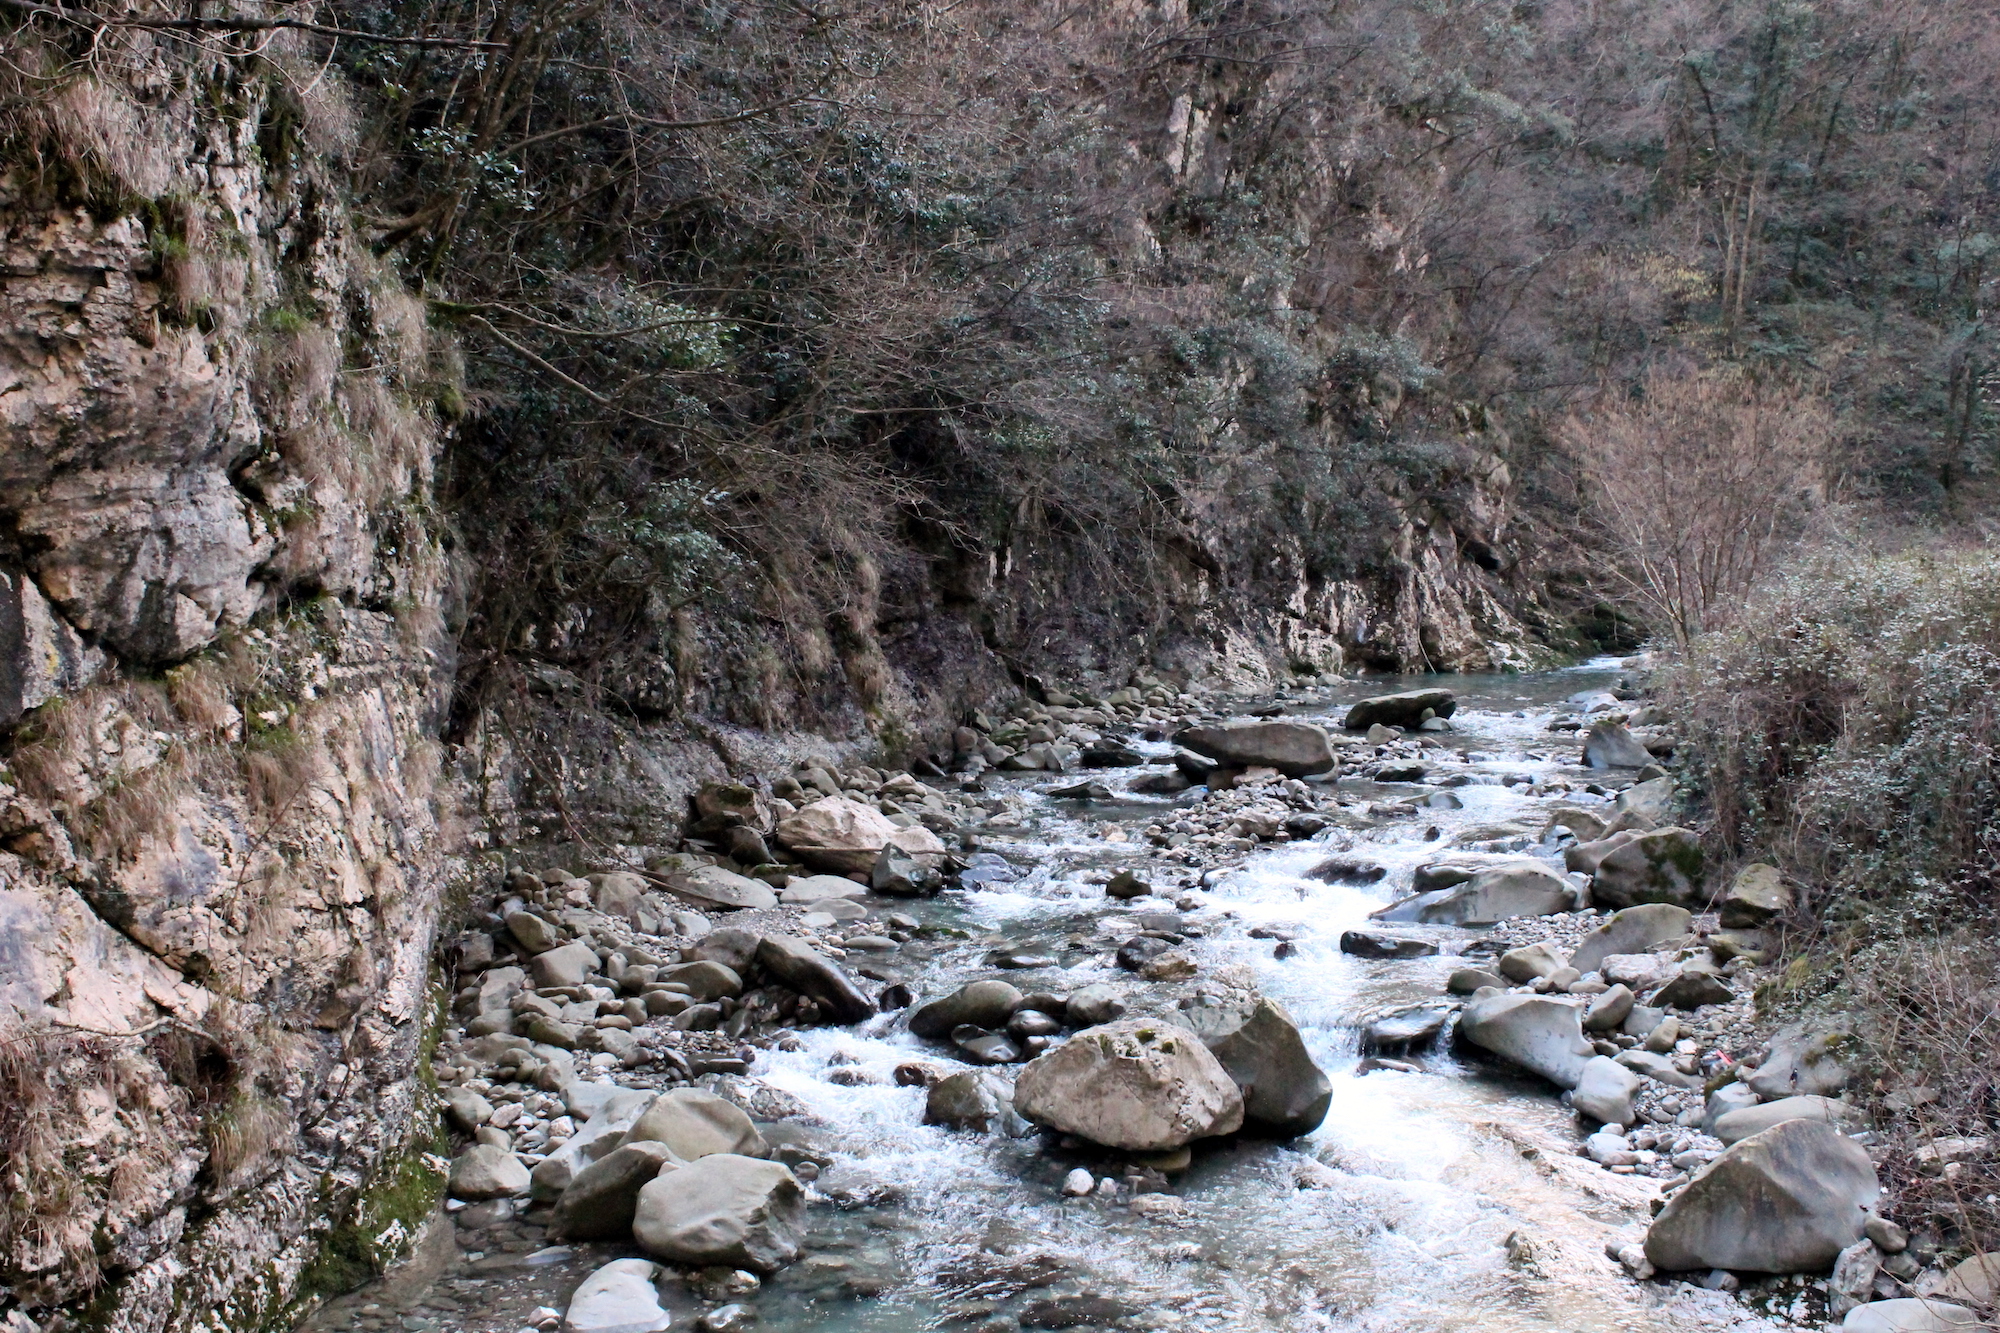 Turrite Cava River - Fabbriche di Vallico